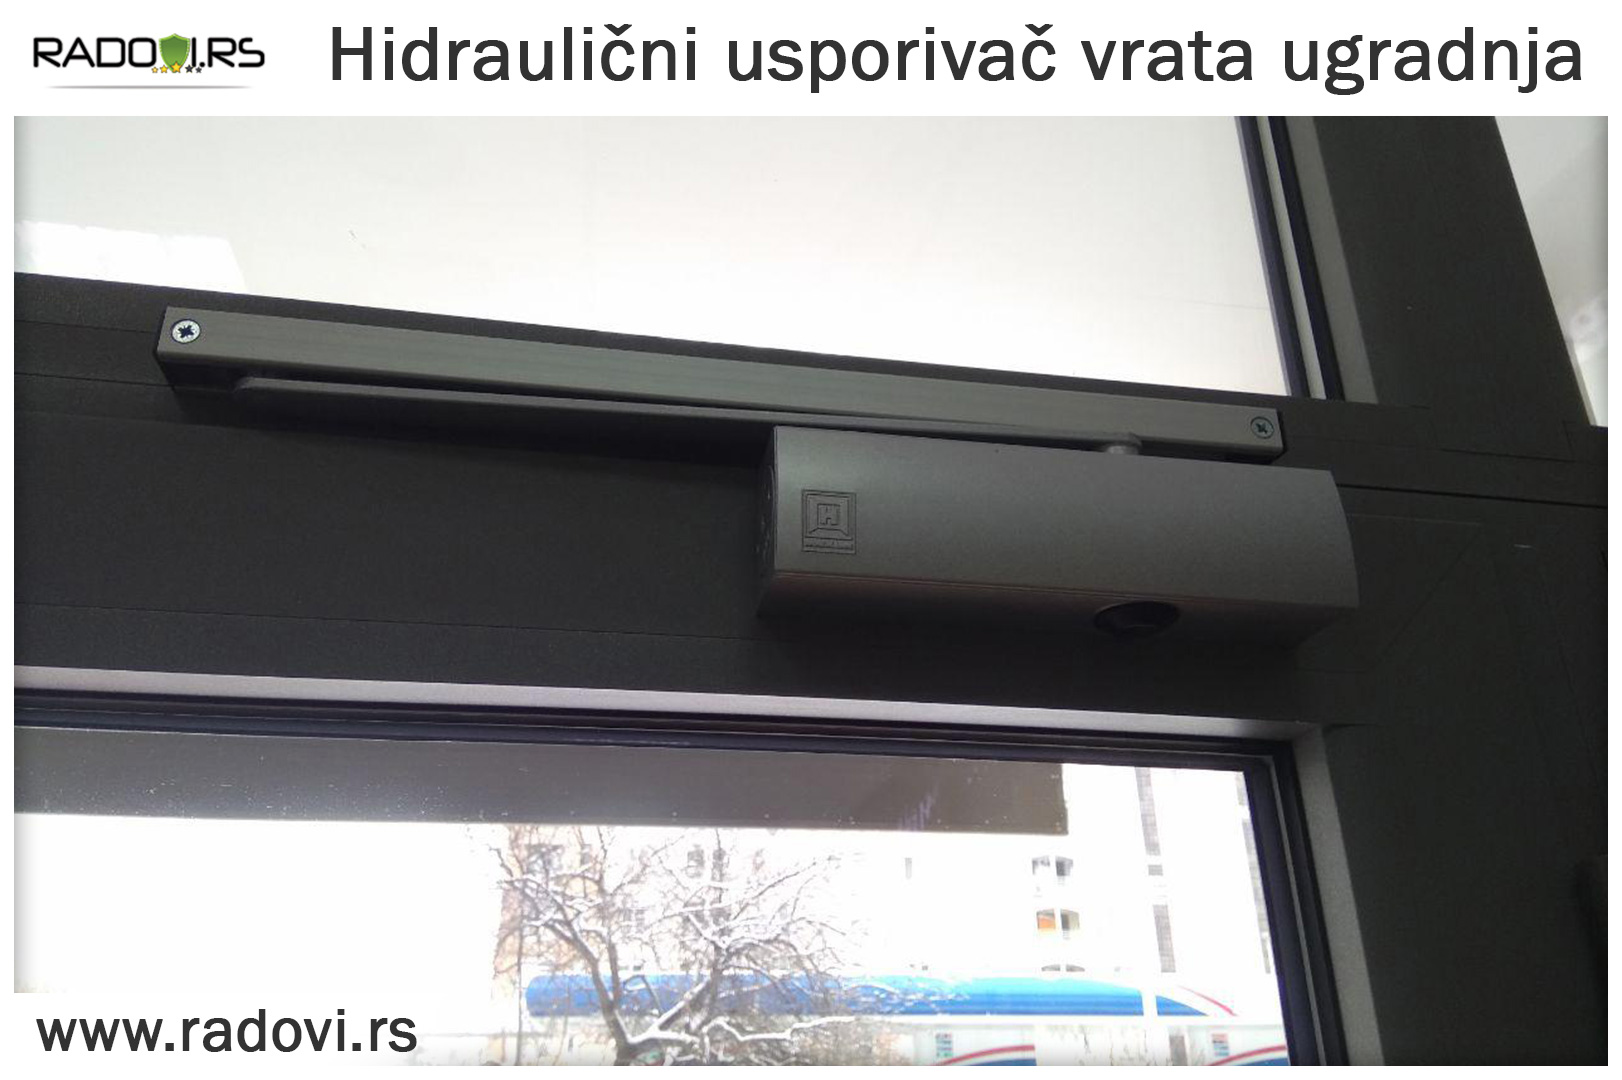 Hidraulični usporivač vrata ugradnja - Radovi.rs